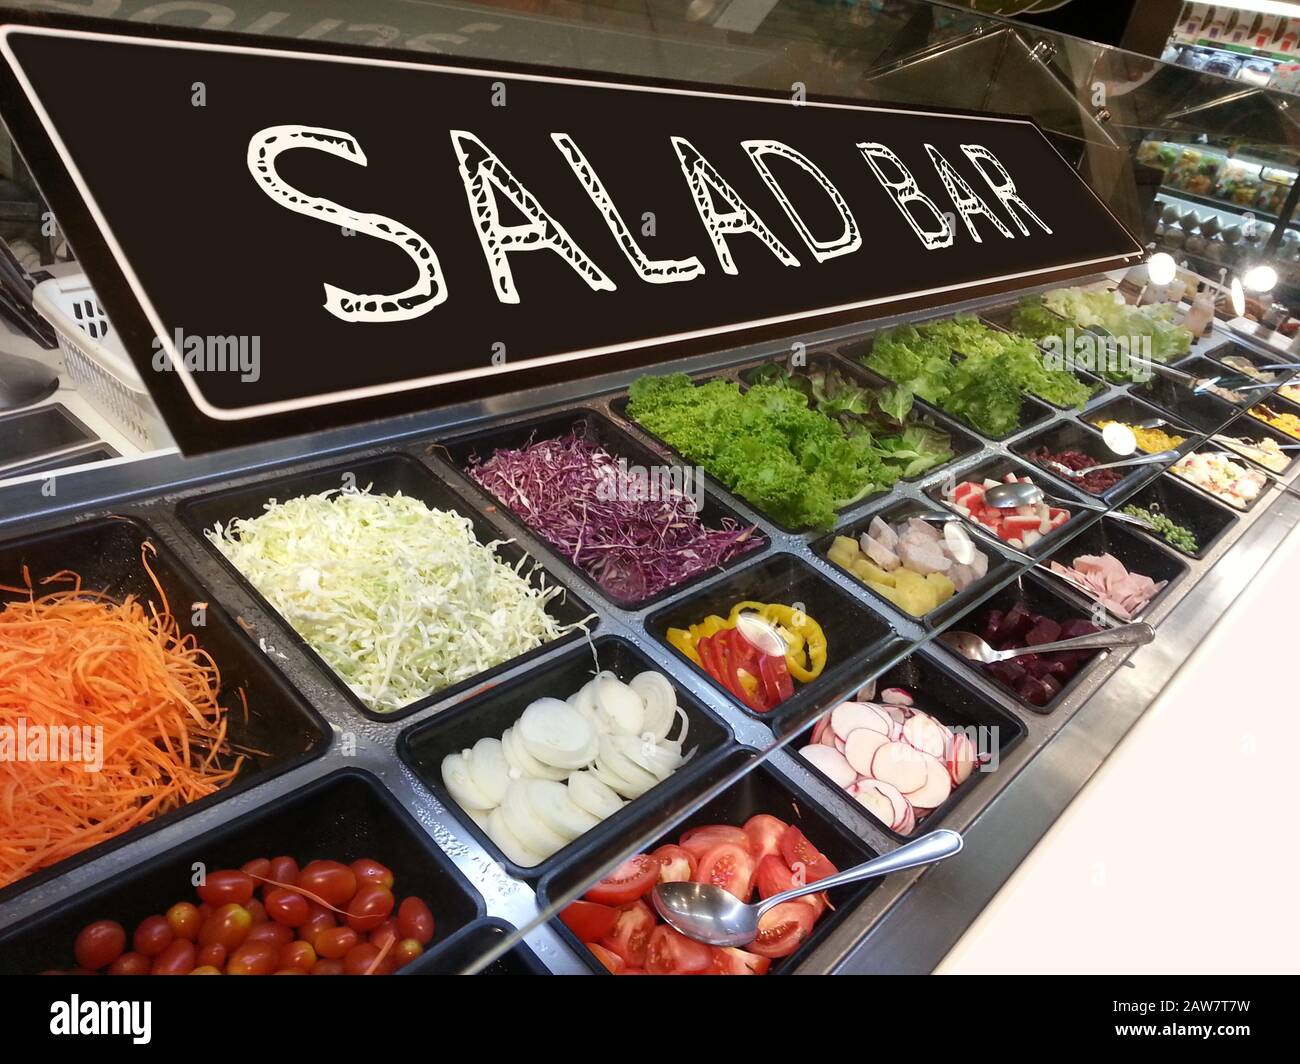 varietà di verdure fresche colorate e frutta all'angolo del salad bar nel supermercato con il segno del salad bar sulla parte superiore Foto Stock